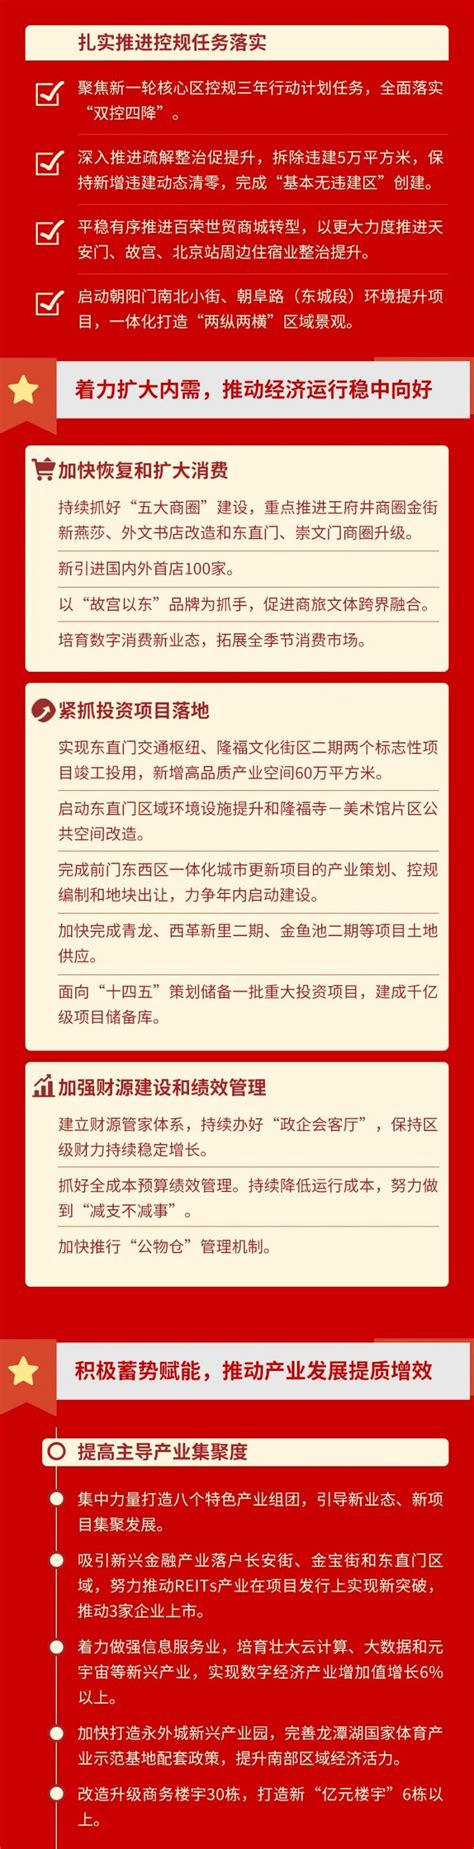 一图读懂 | 东城区人民政府工作报告_政府工作报告_北京市东城区人民政府网站